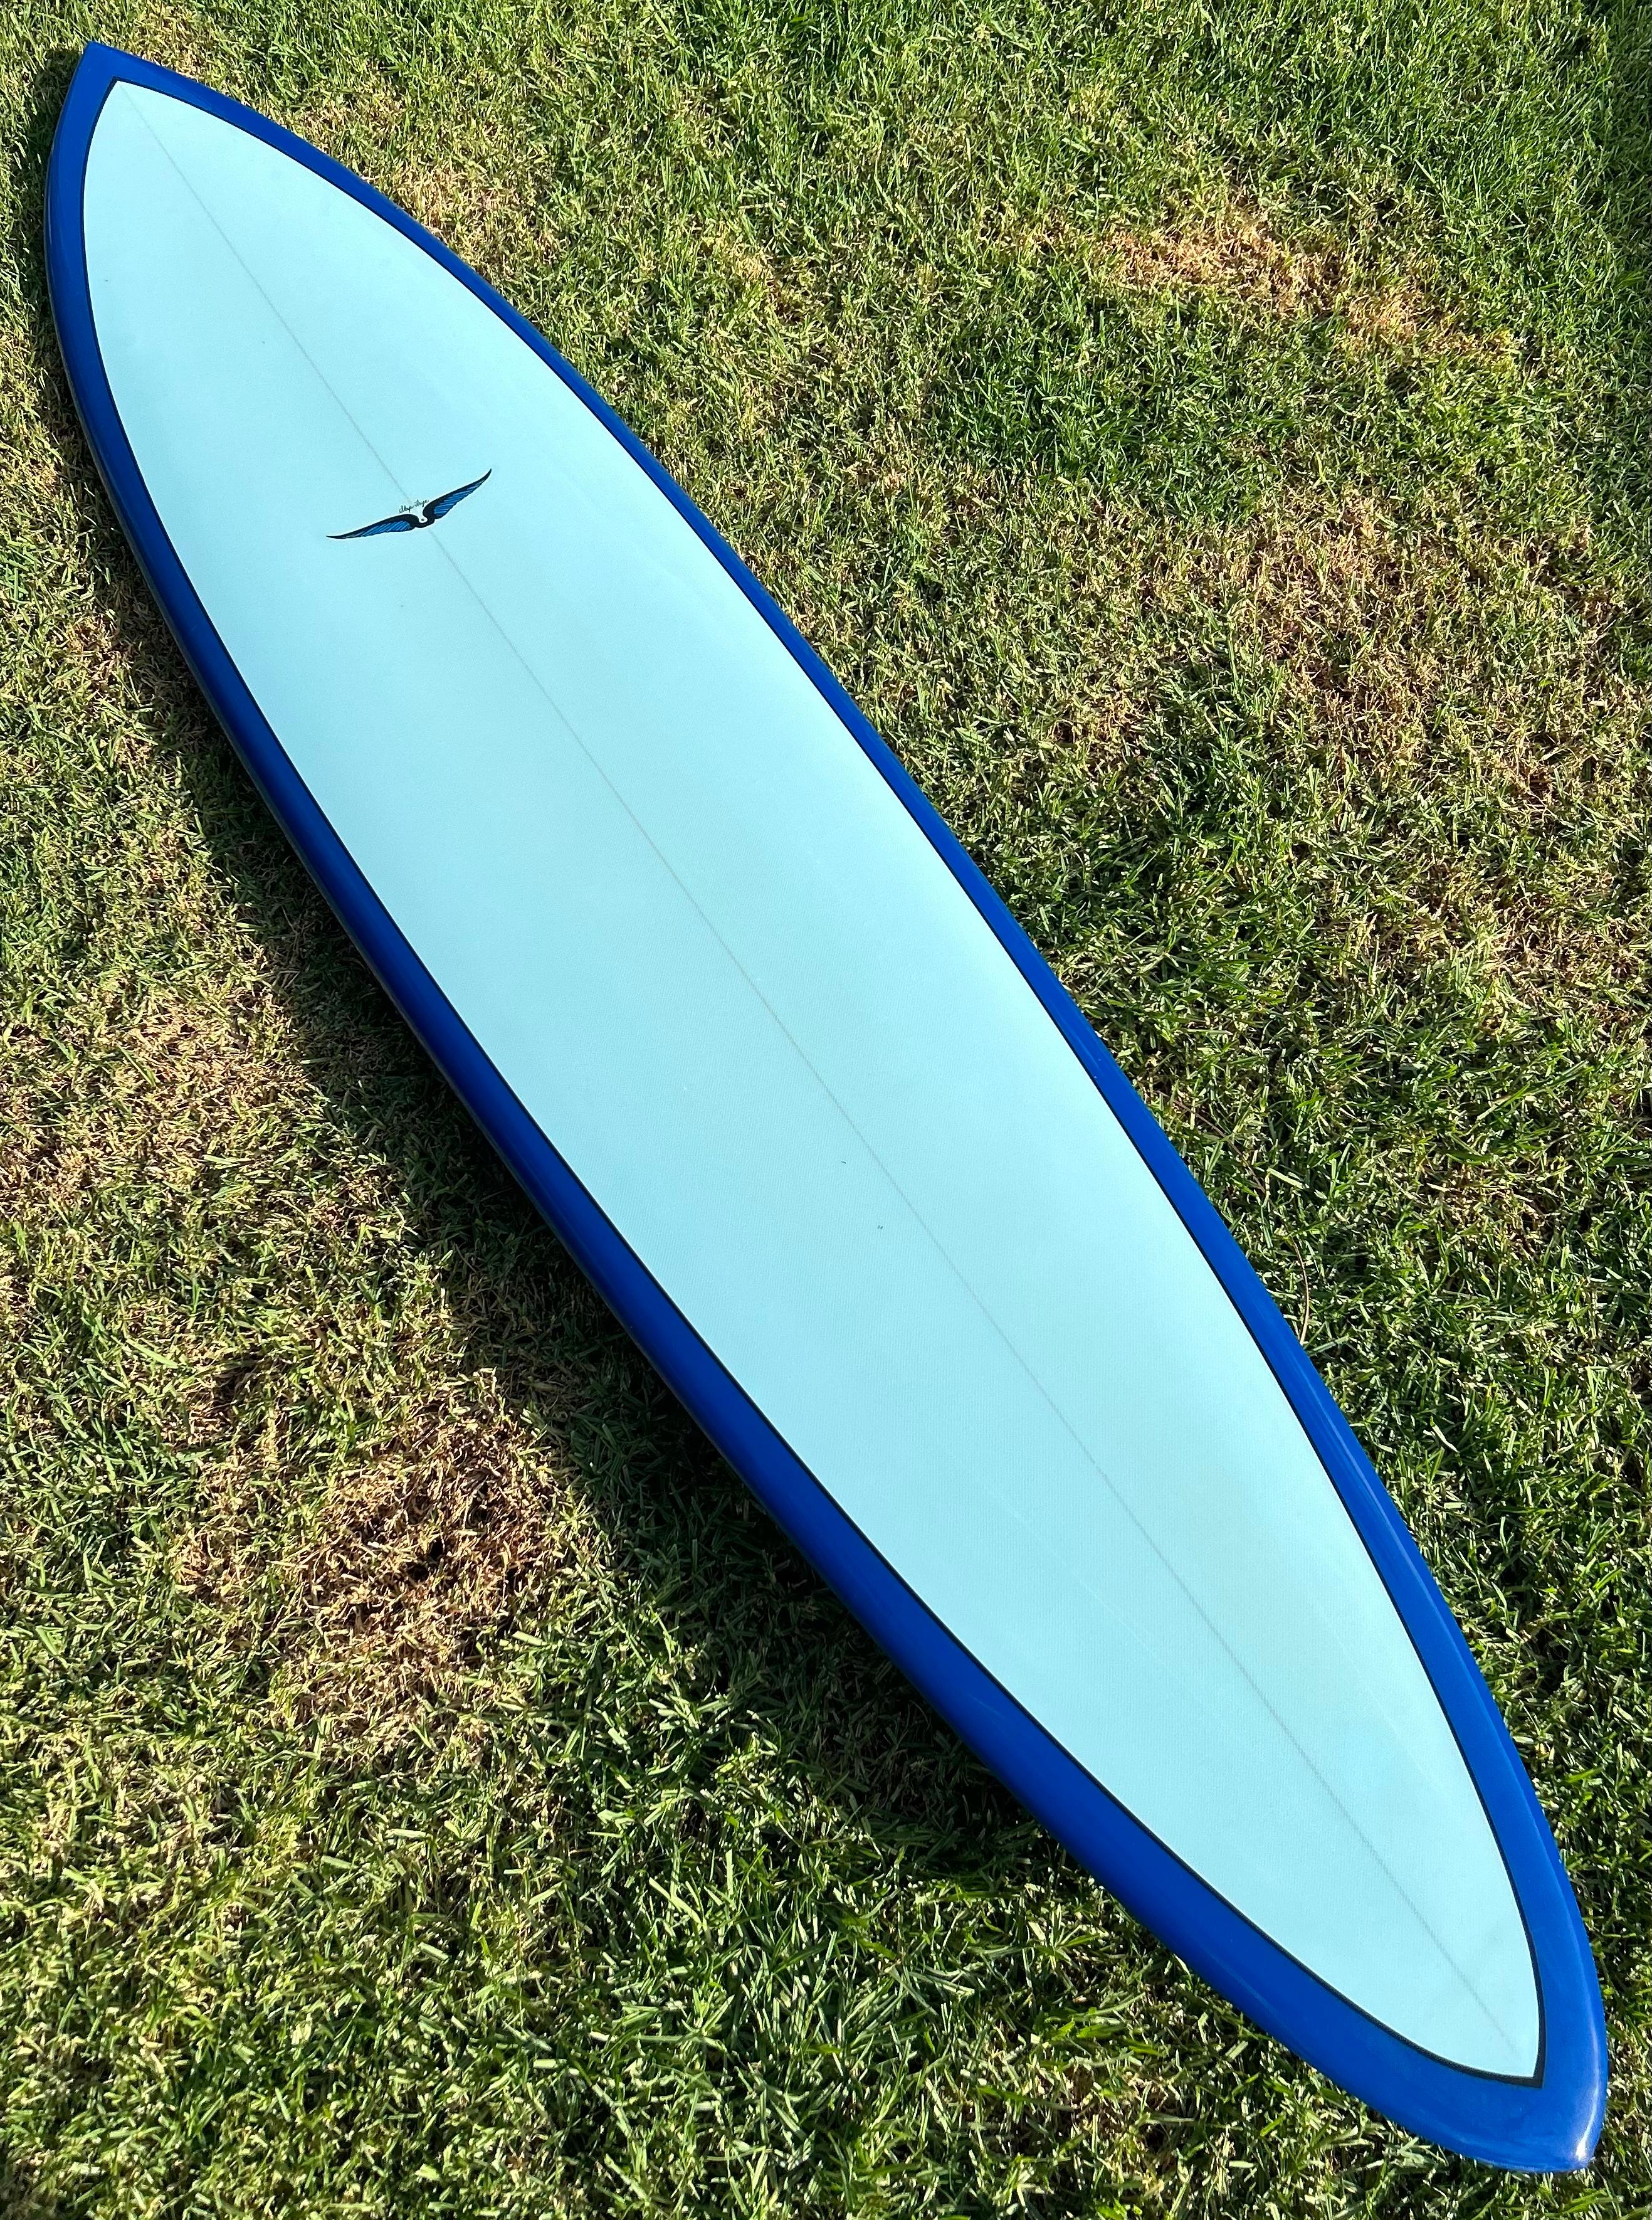 skip frye surfboard for sale